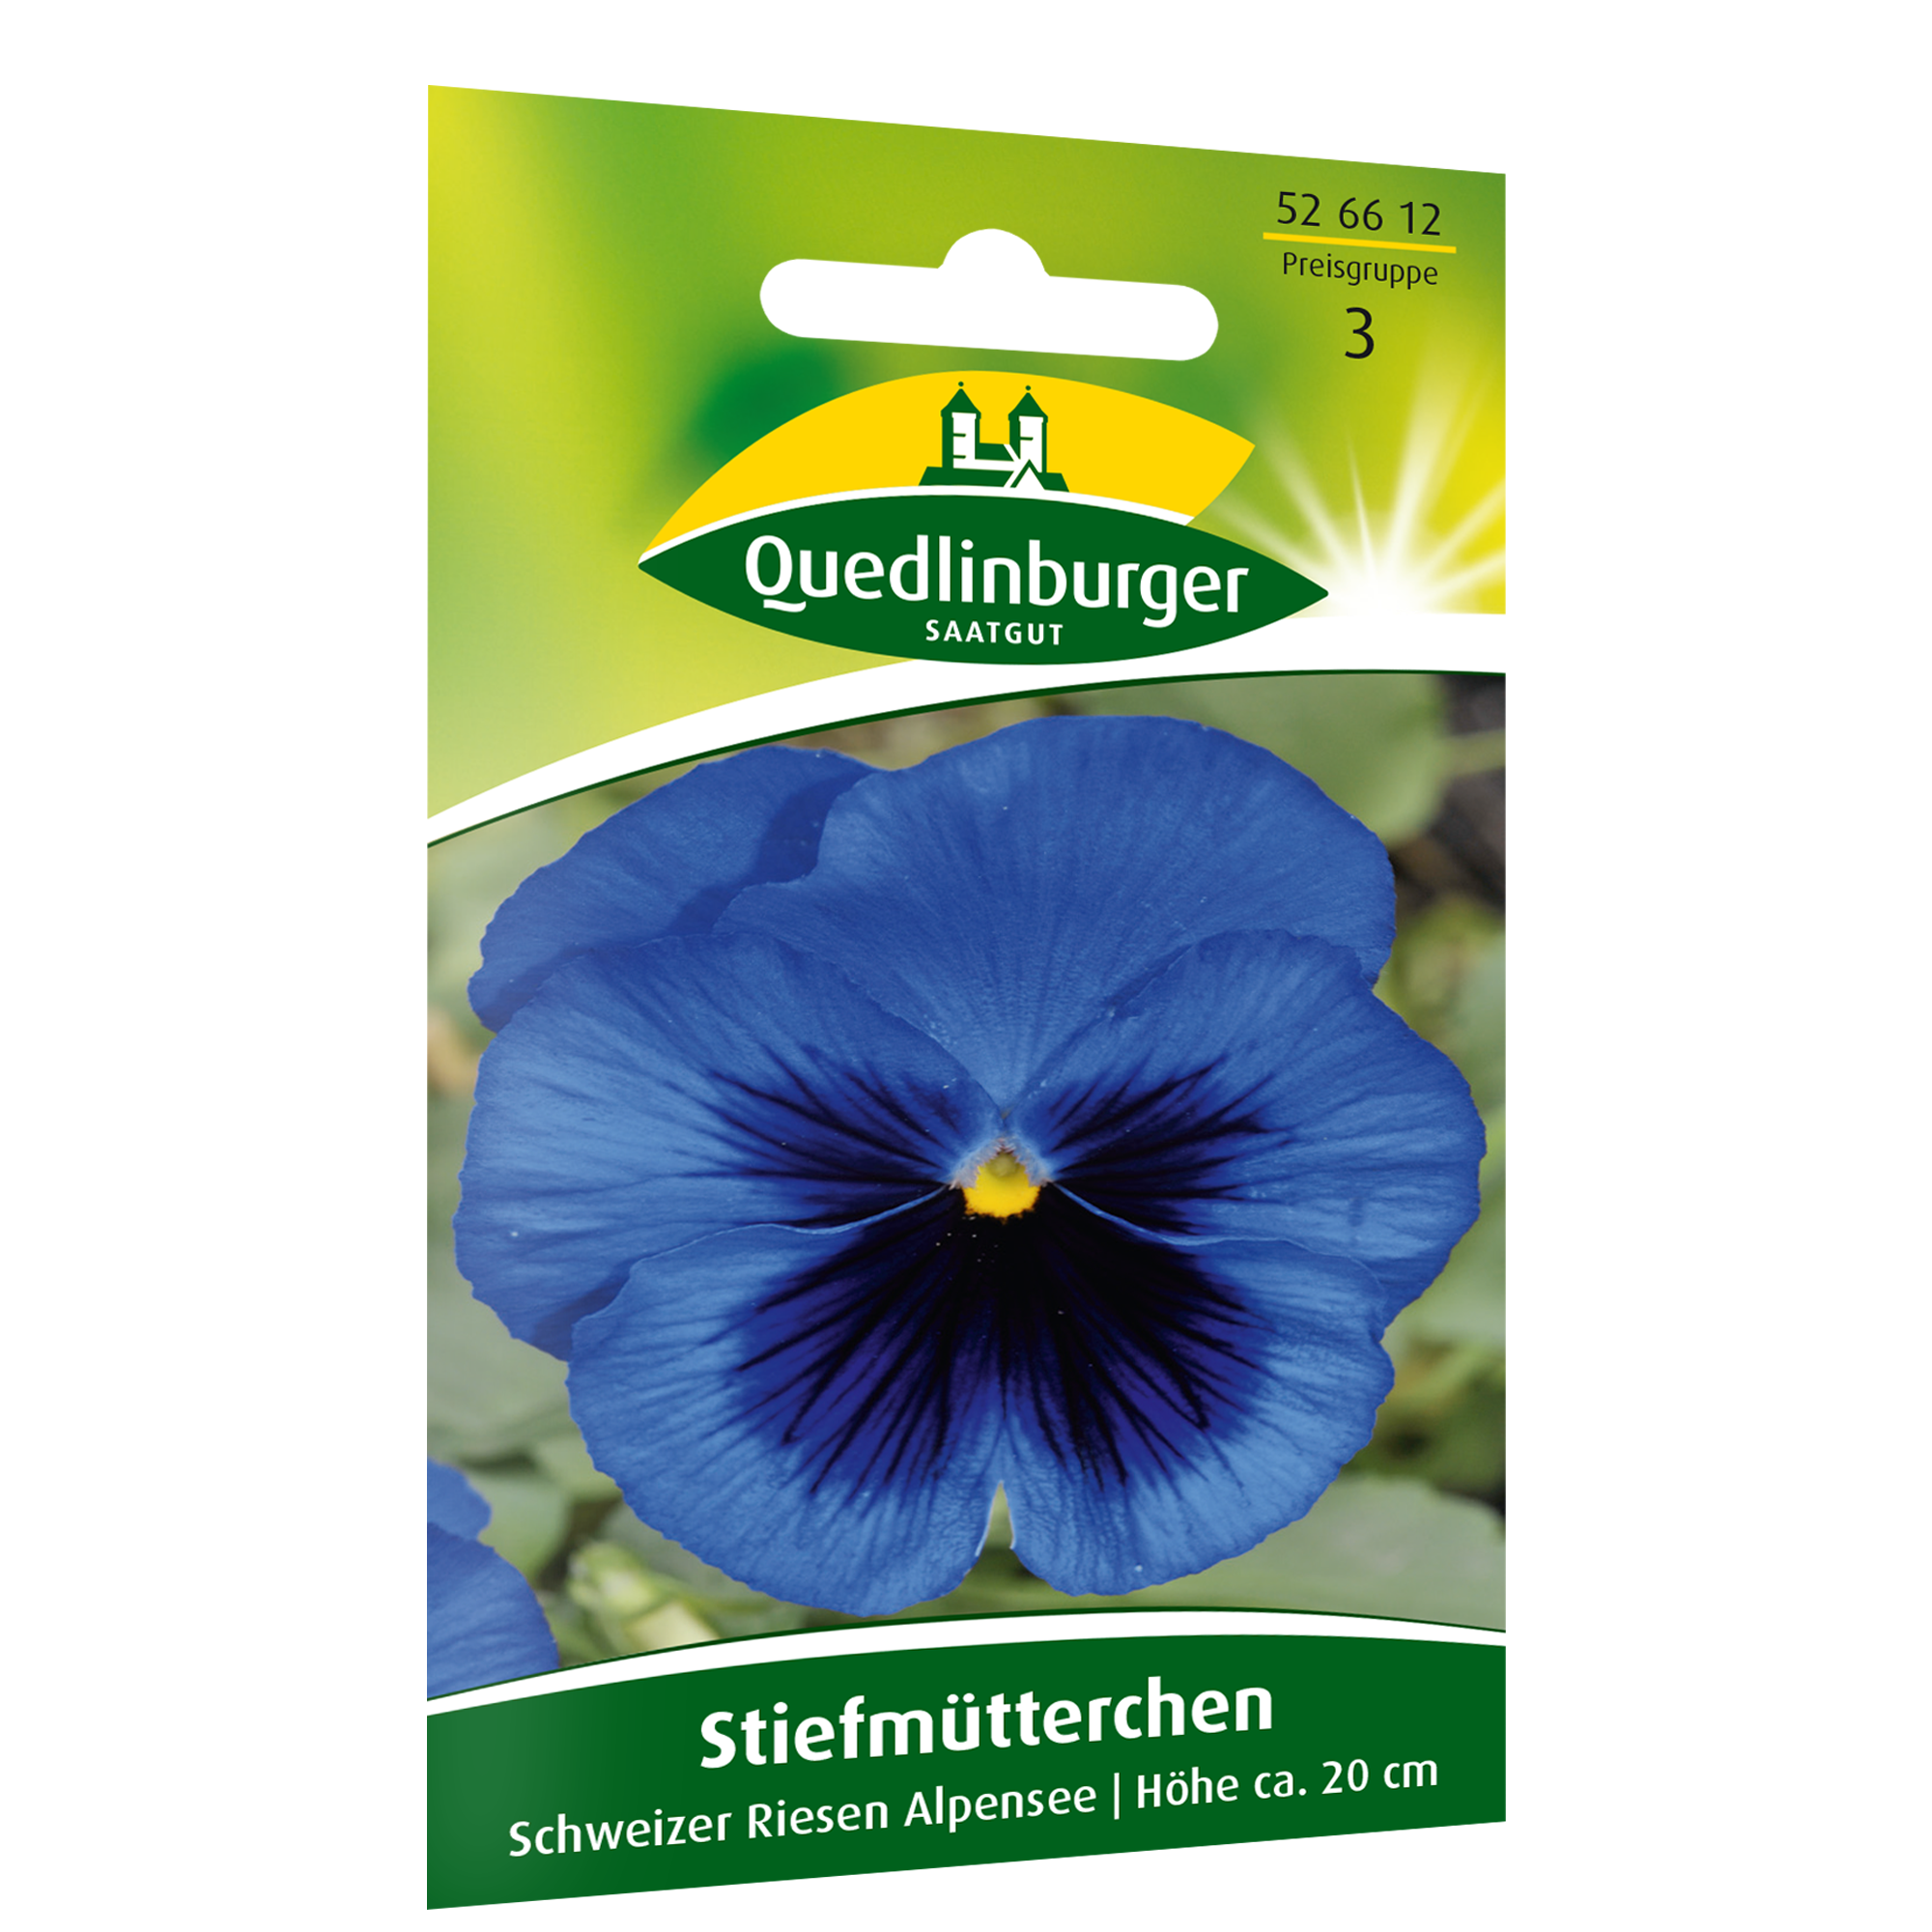 Stiefmütterchen 'Schweizer Riese Alpensee' + product picture